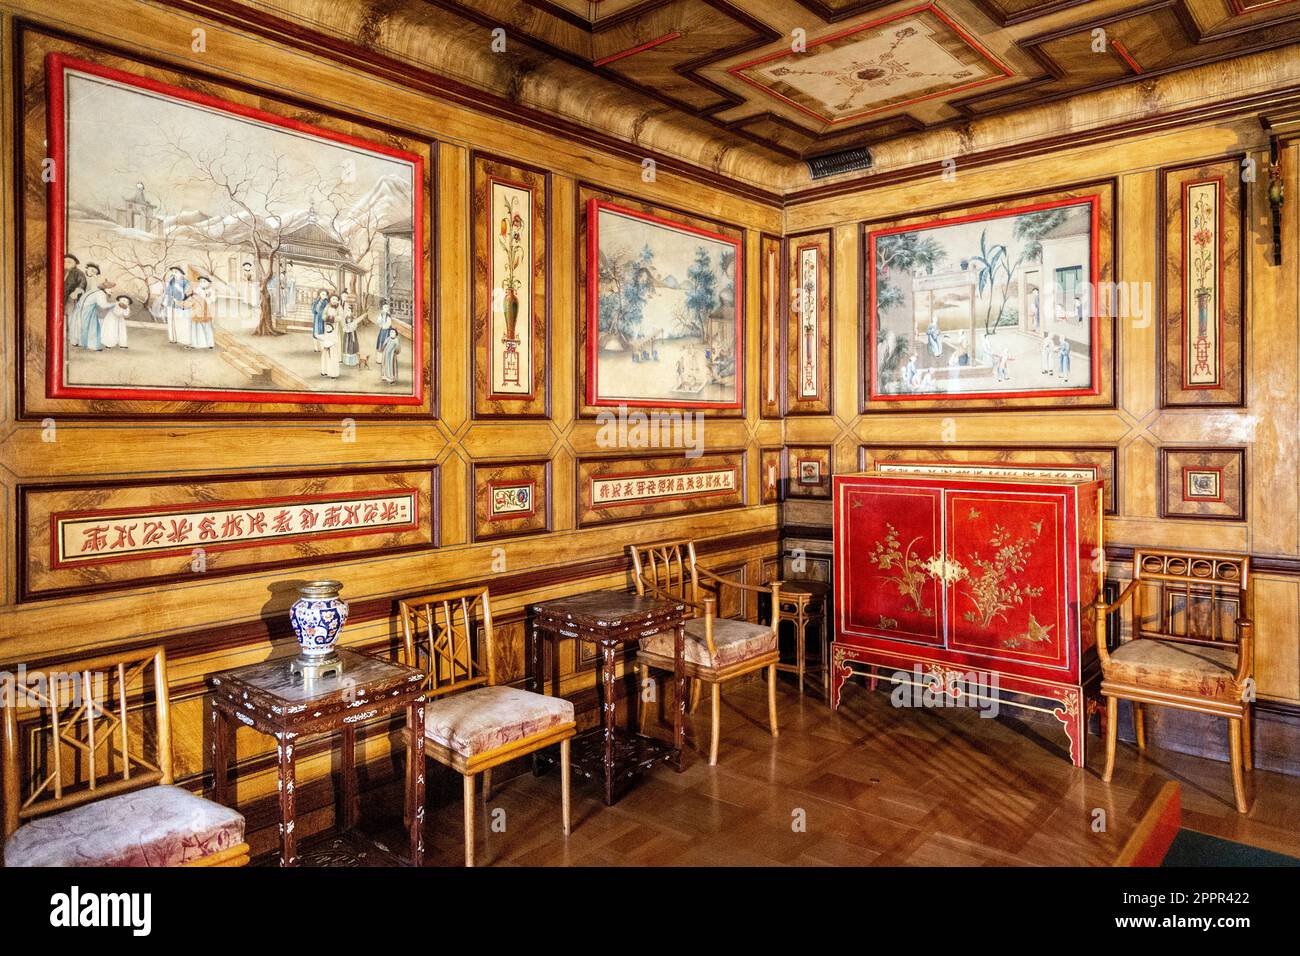 Armadio rosso antico e opere d'arte orientali all'interno della Sala Cinese al Palazzo reale di Wilanow, Varsavia, Polonia, del 17th secolo Foto Stock